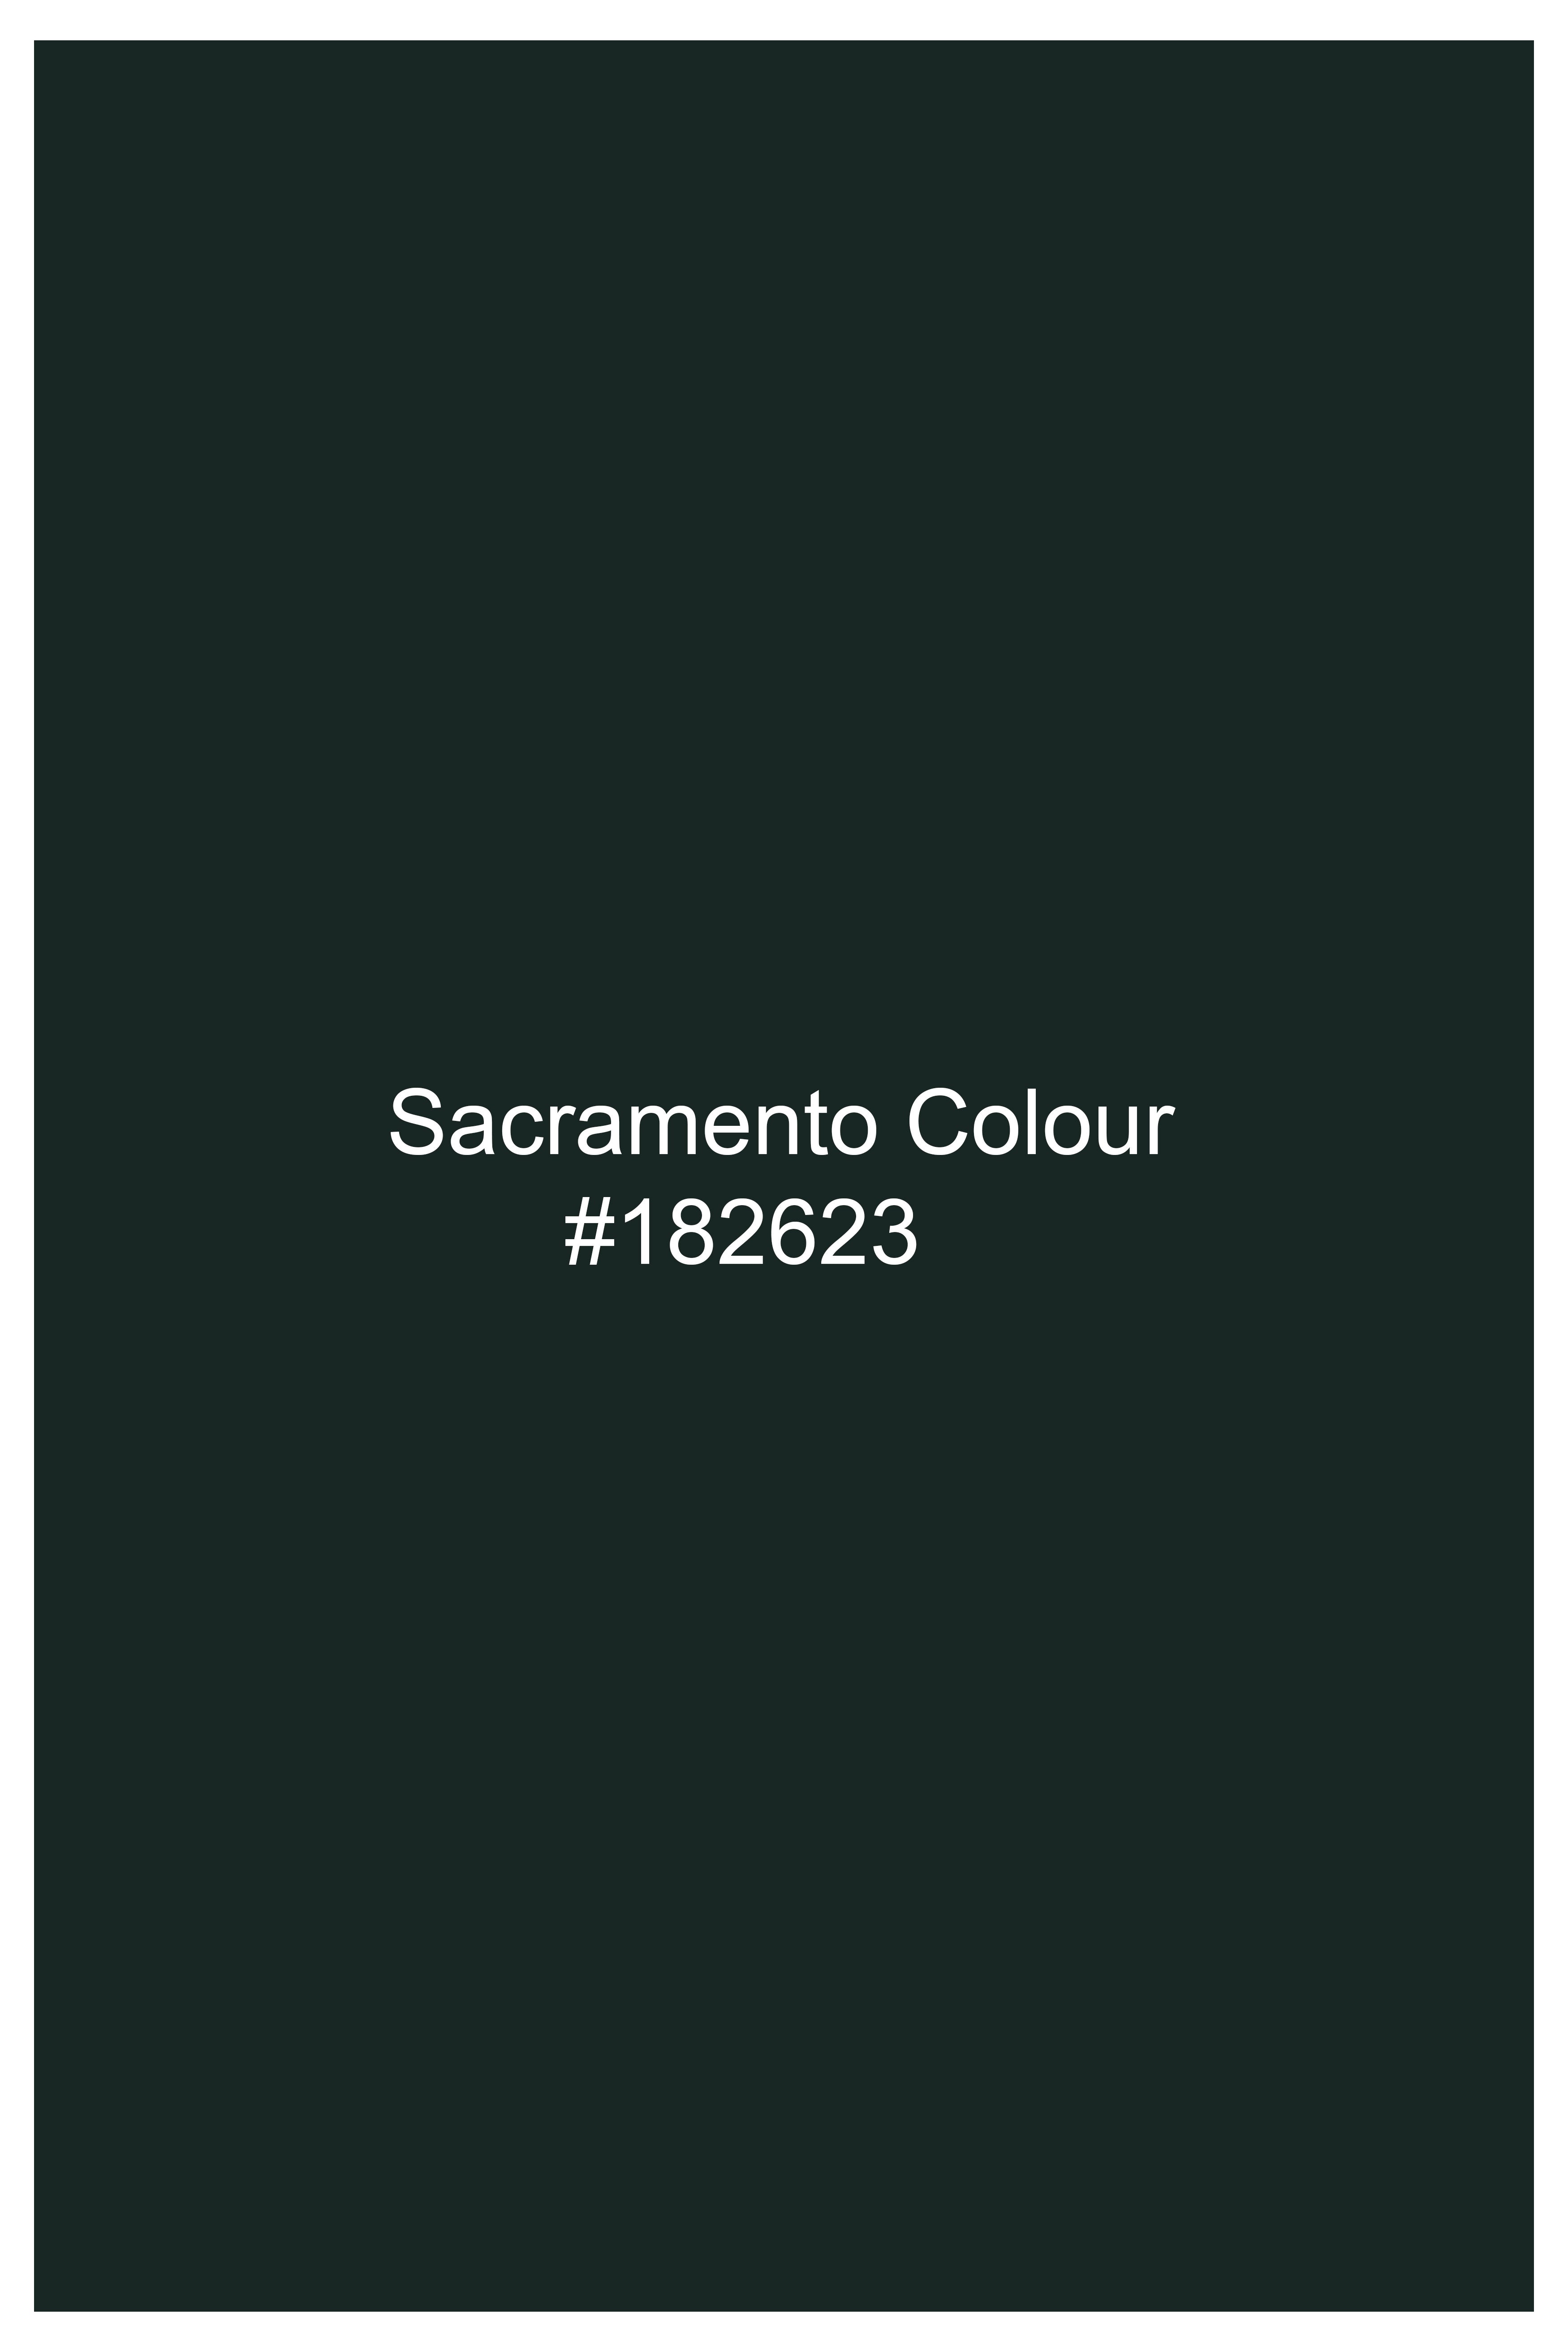 Sacramento Green Wool Rich Pant T3066-28, T3066-30, T3066-32, T3066-34, T3066-36, T3066-38, T3066-40, T3066-42, T3066-44